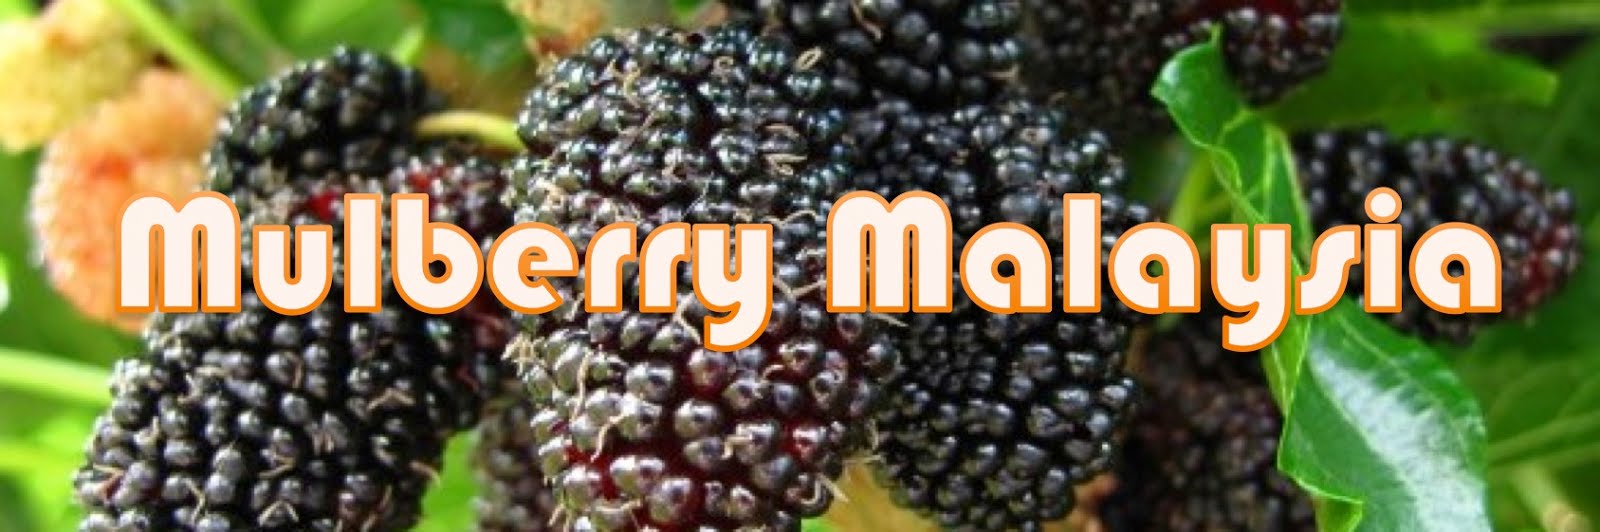 Klik image header di bawah ini untuk ke grup FB Pokok Mulberry